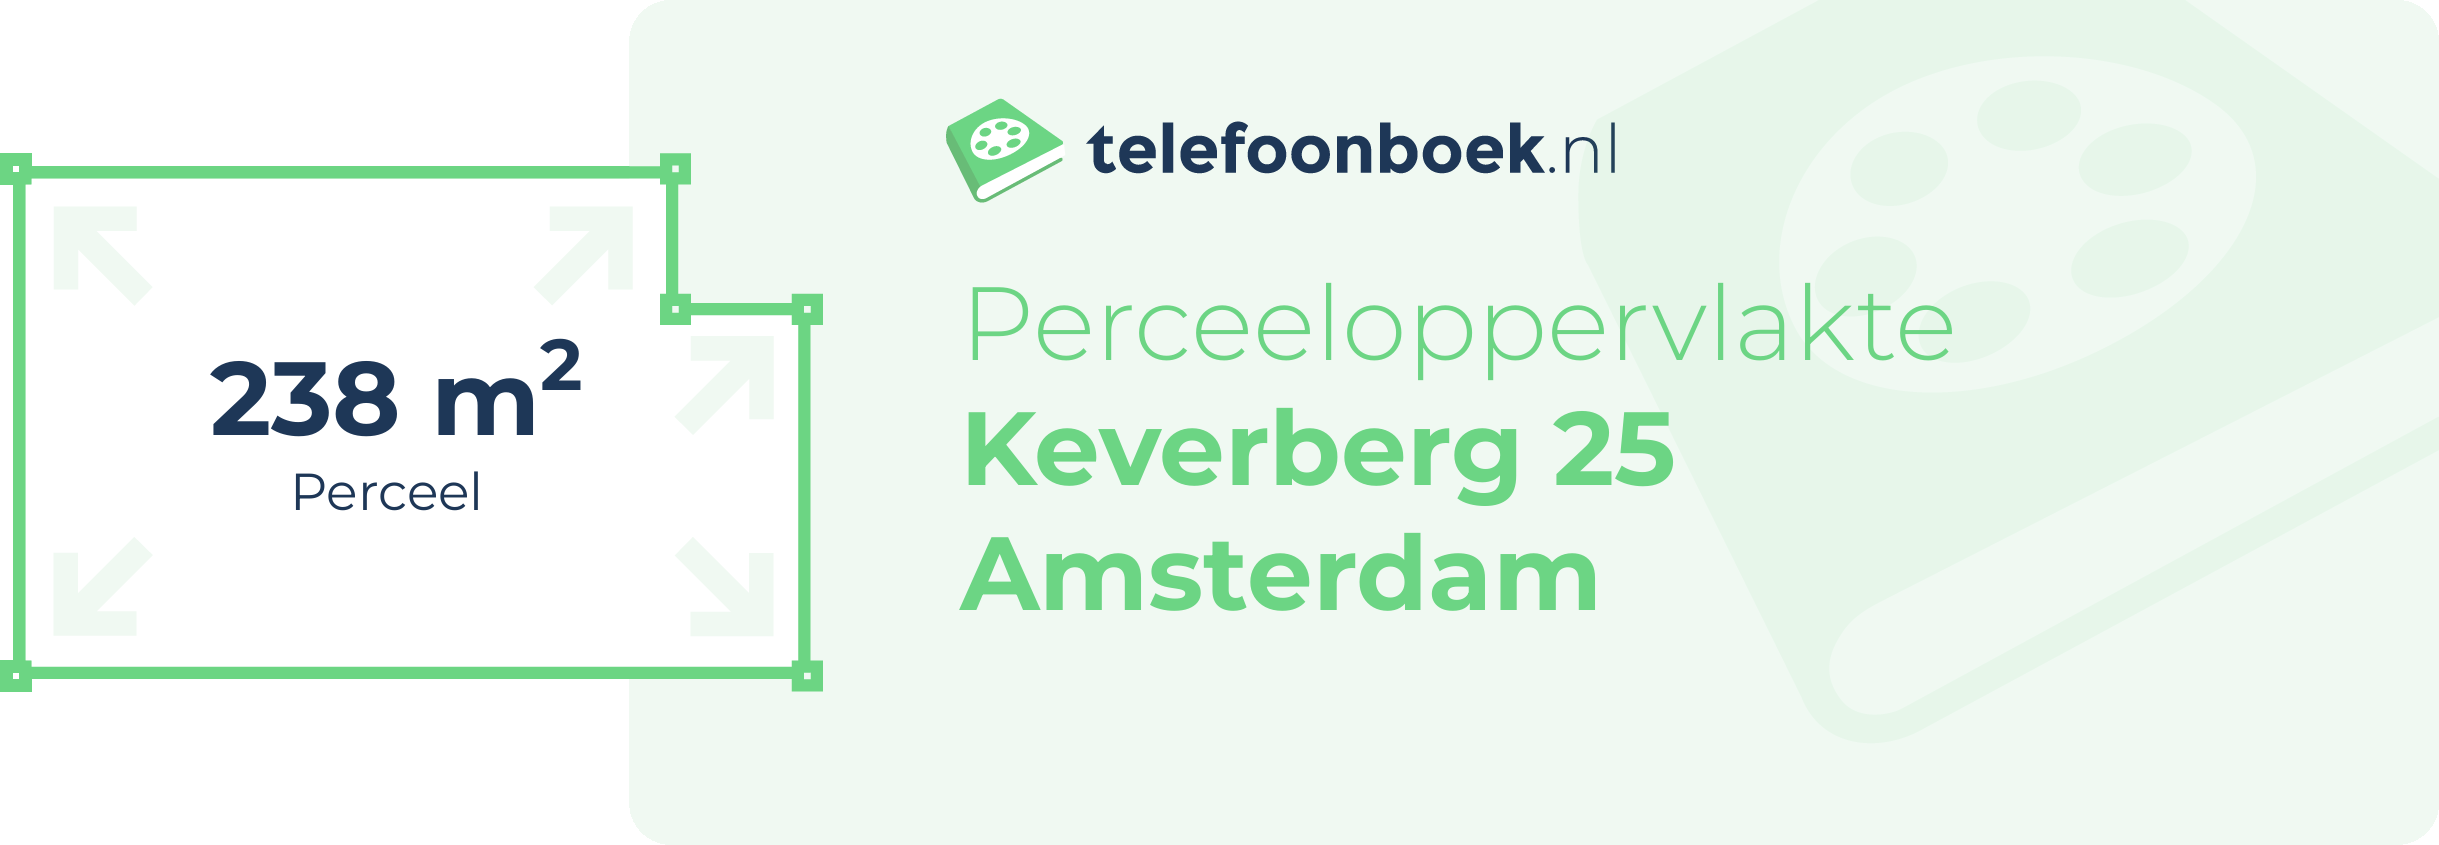 Perceeloppervlakte Keverberg 25 Amsterdam